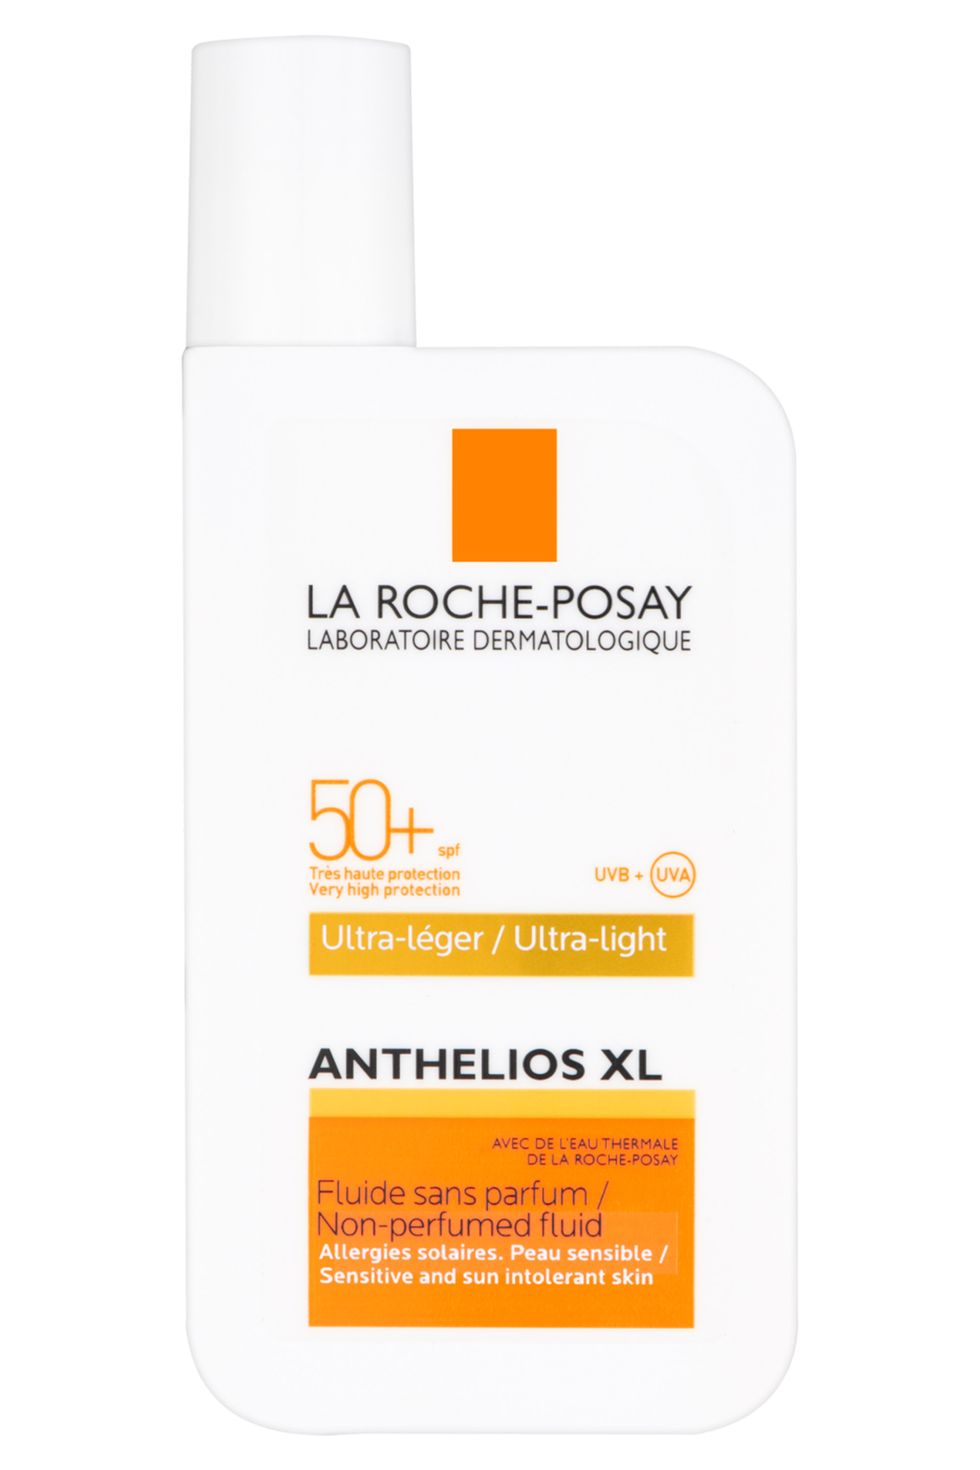 La Roche Posay sunscreen